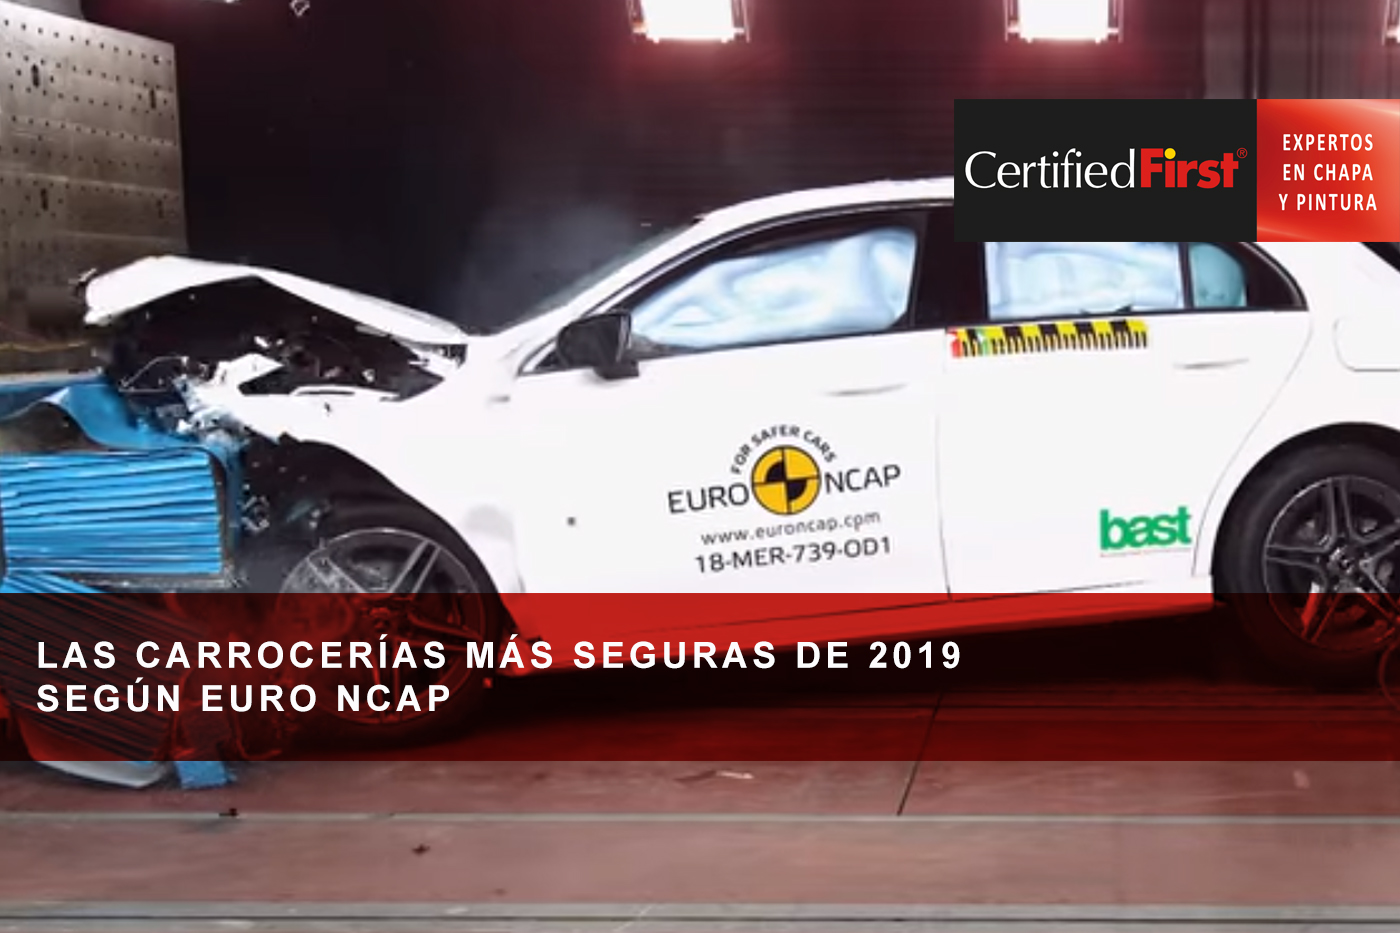 Las carrocerías más seguras de 2019 según Euro NCAP